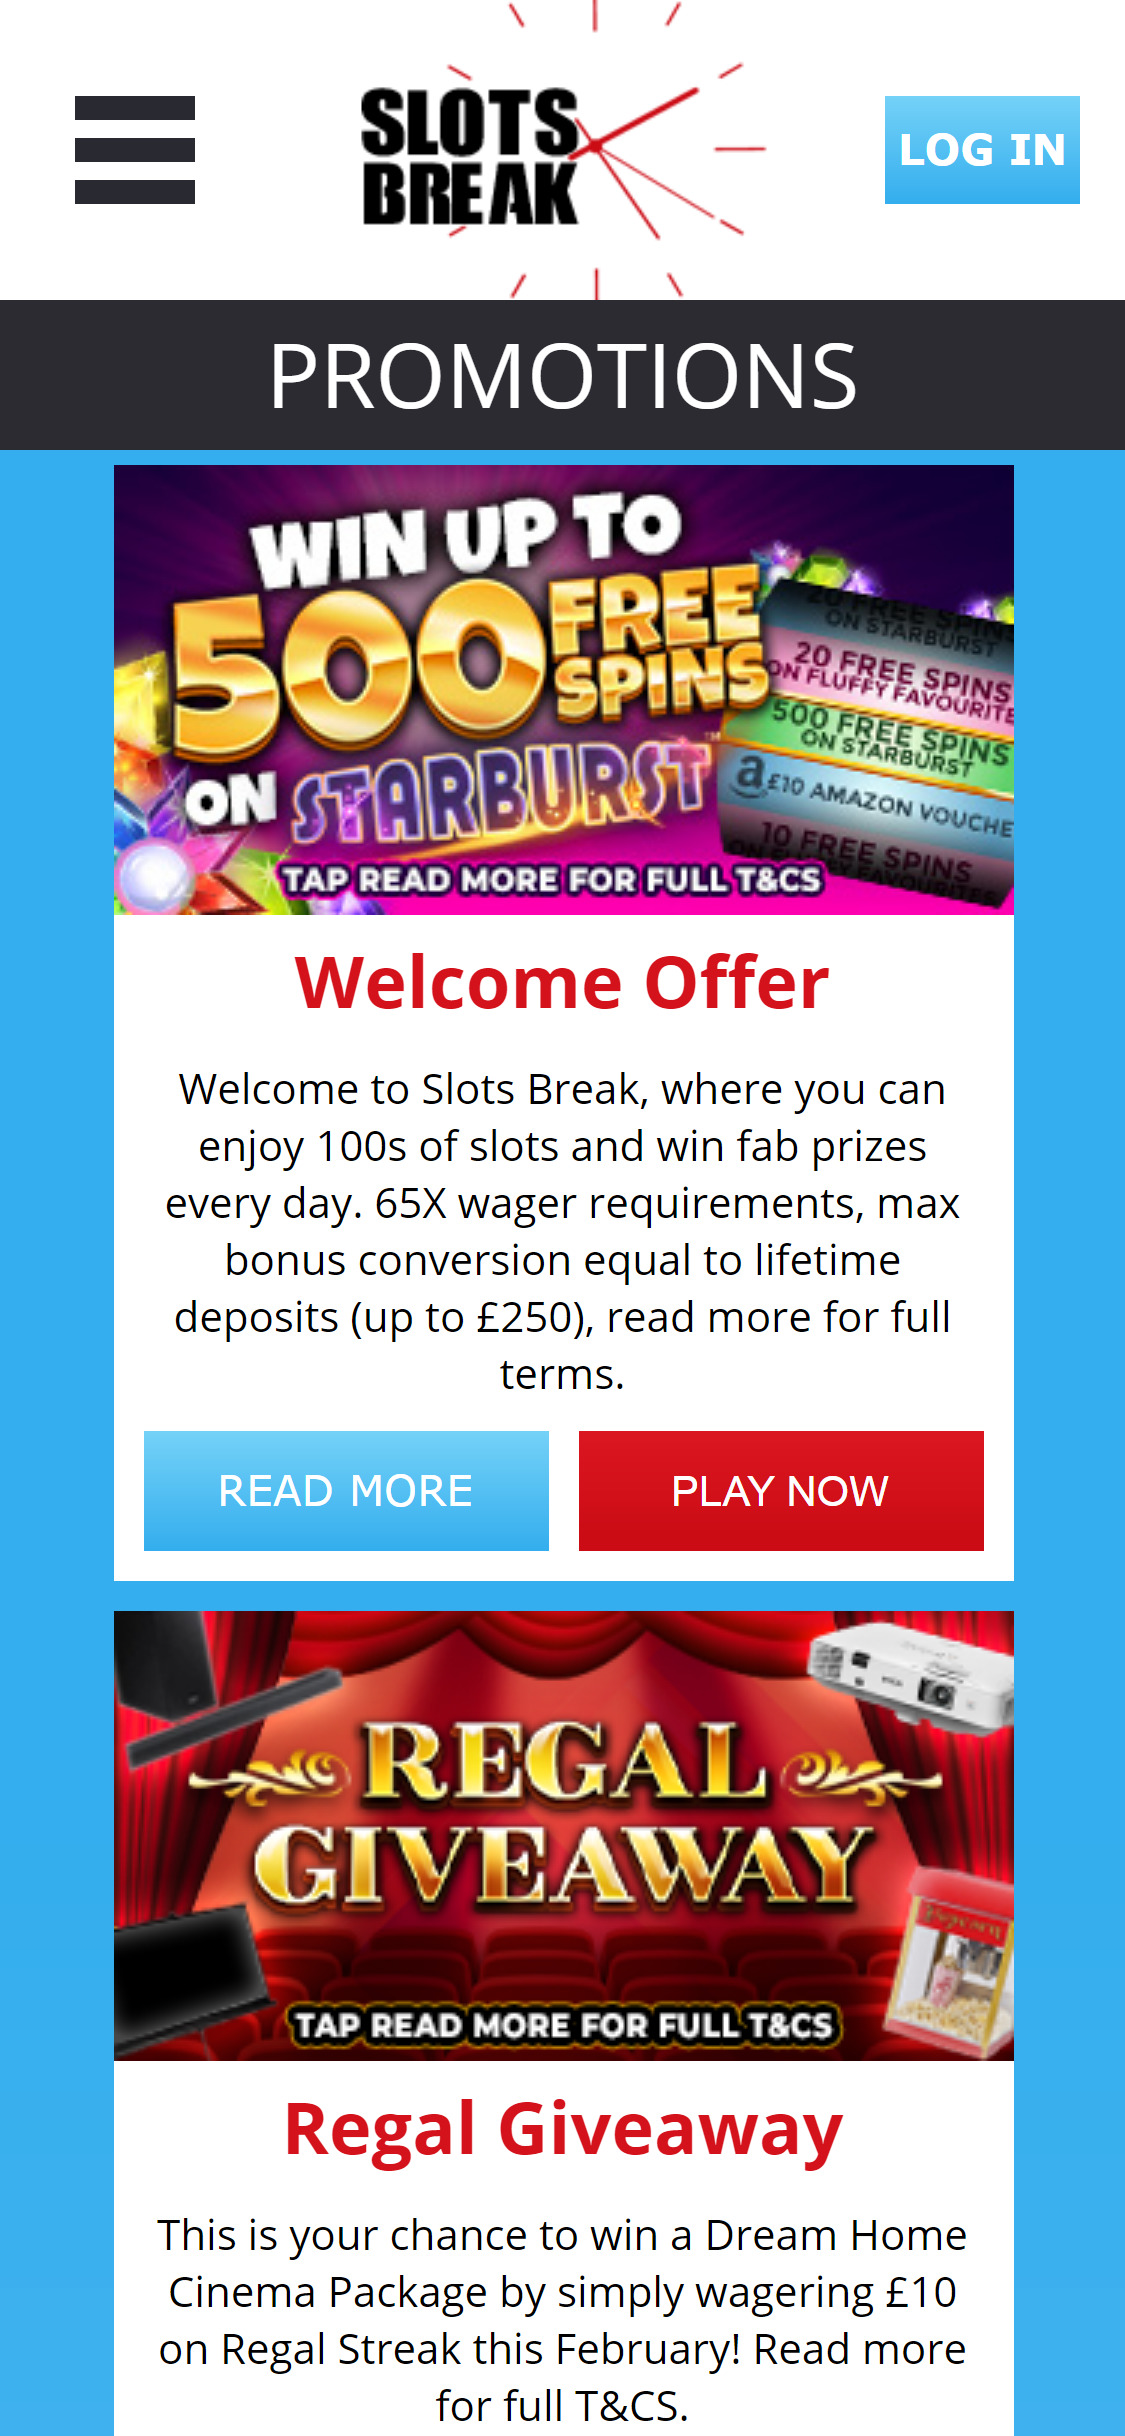 Slots Break Casino Mobile No Deposit Bonus Review